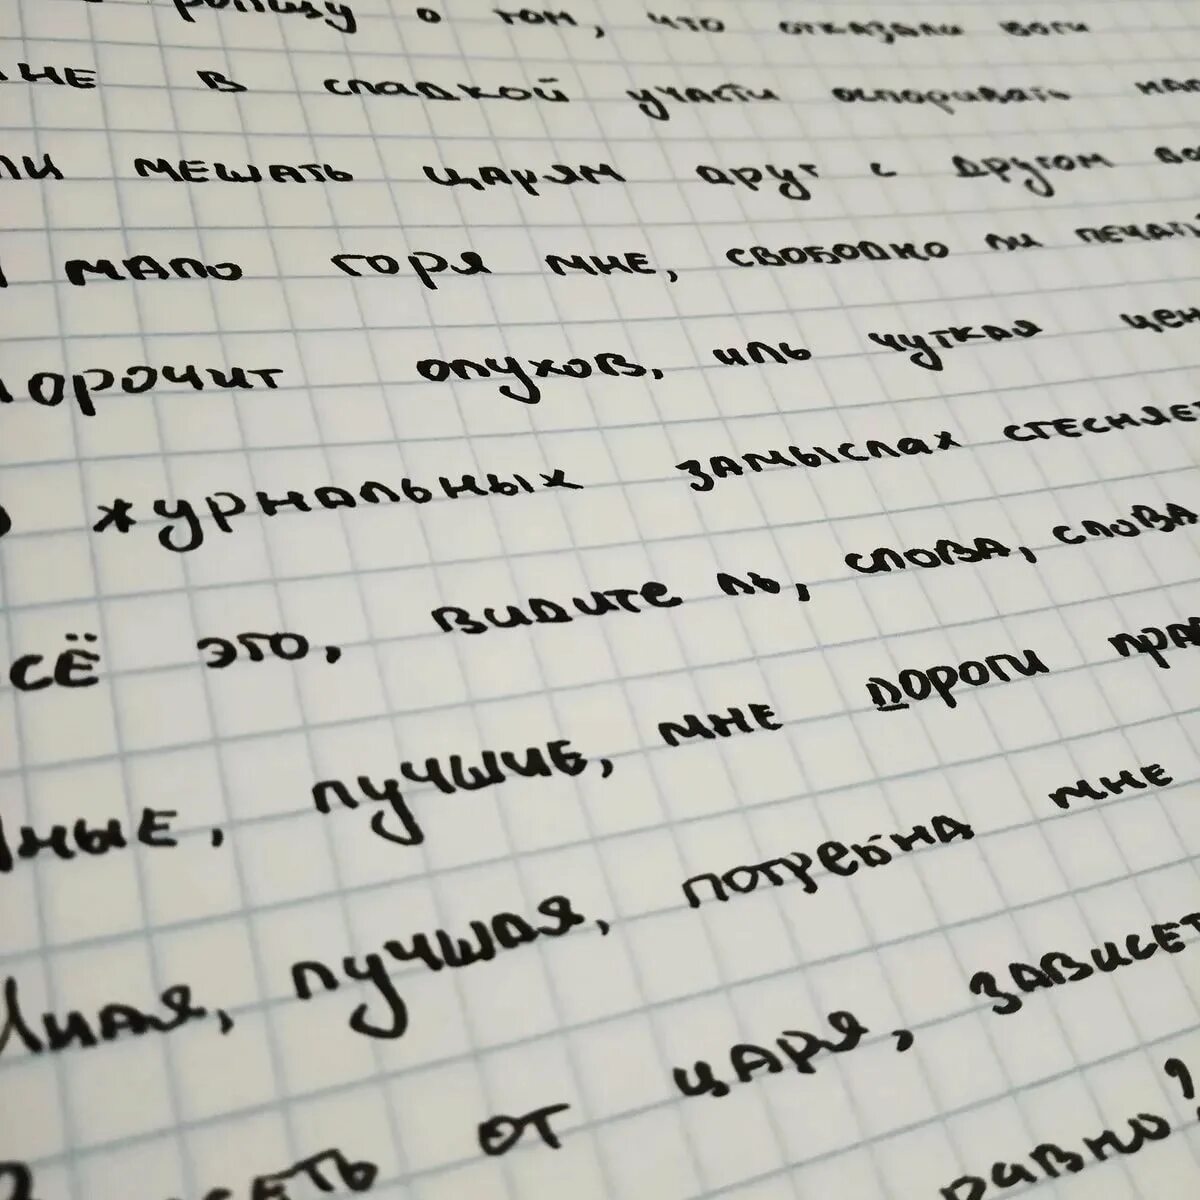 Красивый почерк. Красивый почерк на русском. Красивый печатный почерк. Эстетичный почерк. Фотография почерка